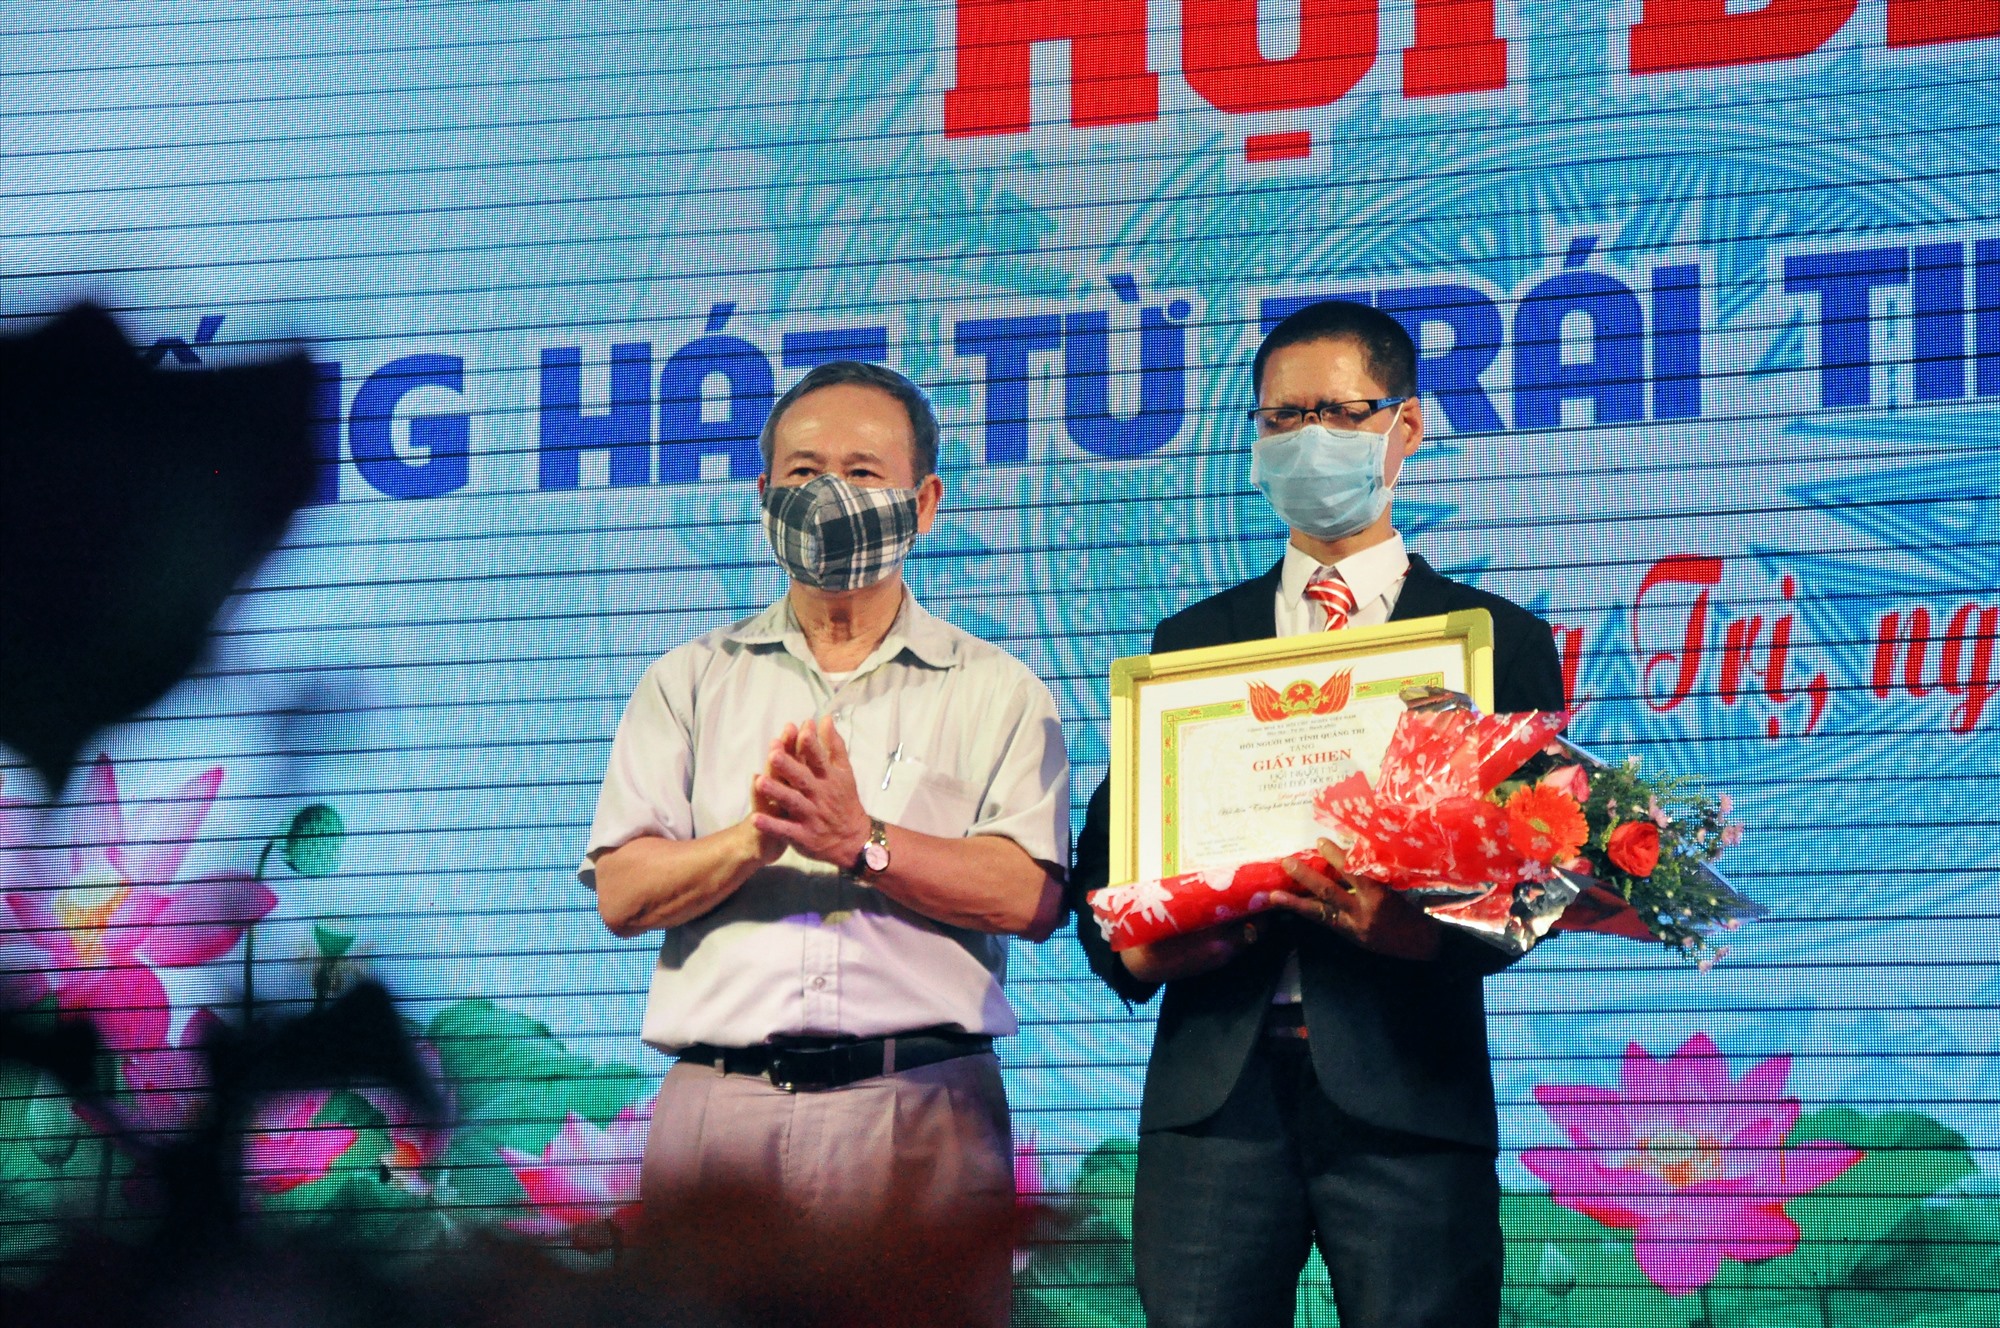 Hội viên Nguyễn Quang đến từ Hội Người mù thành phố Đông Hà vinh dự nhận giải A của hội thi “Tiếng hát từ trái tim” lần thứ VI - Ảnh: Q.Đ